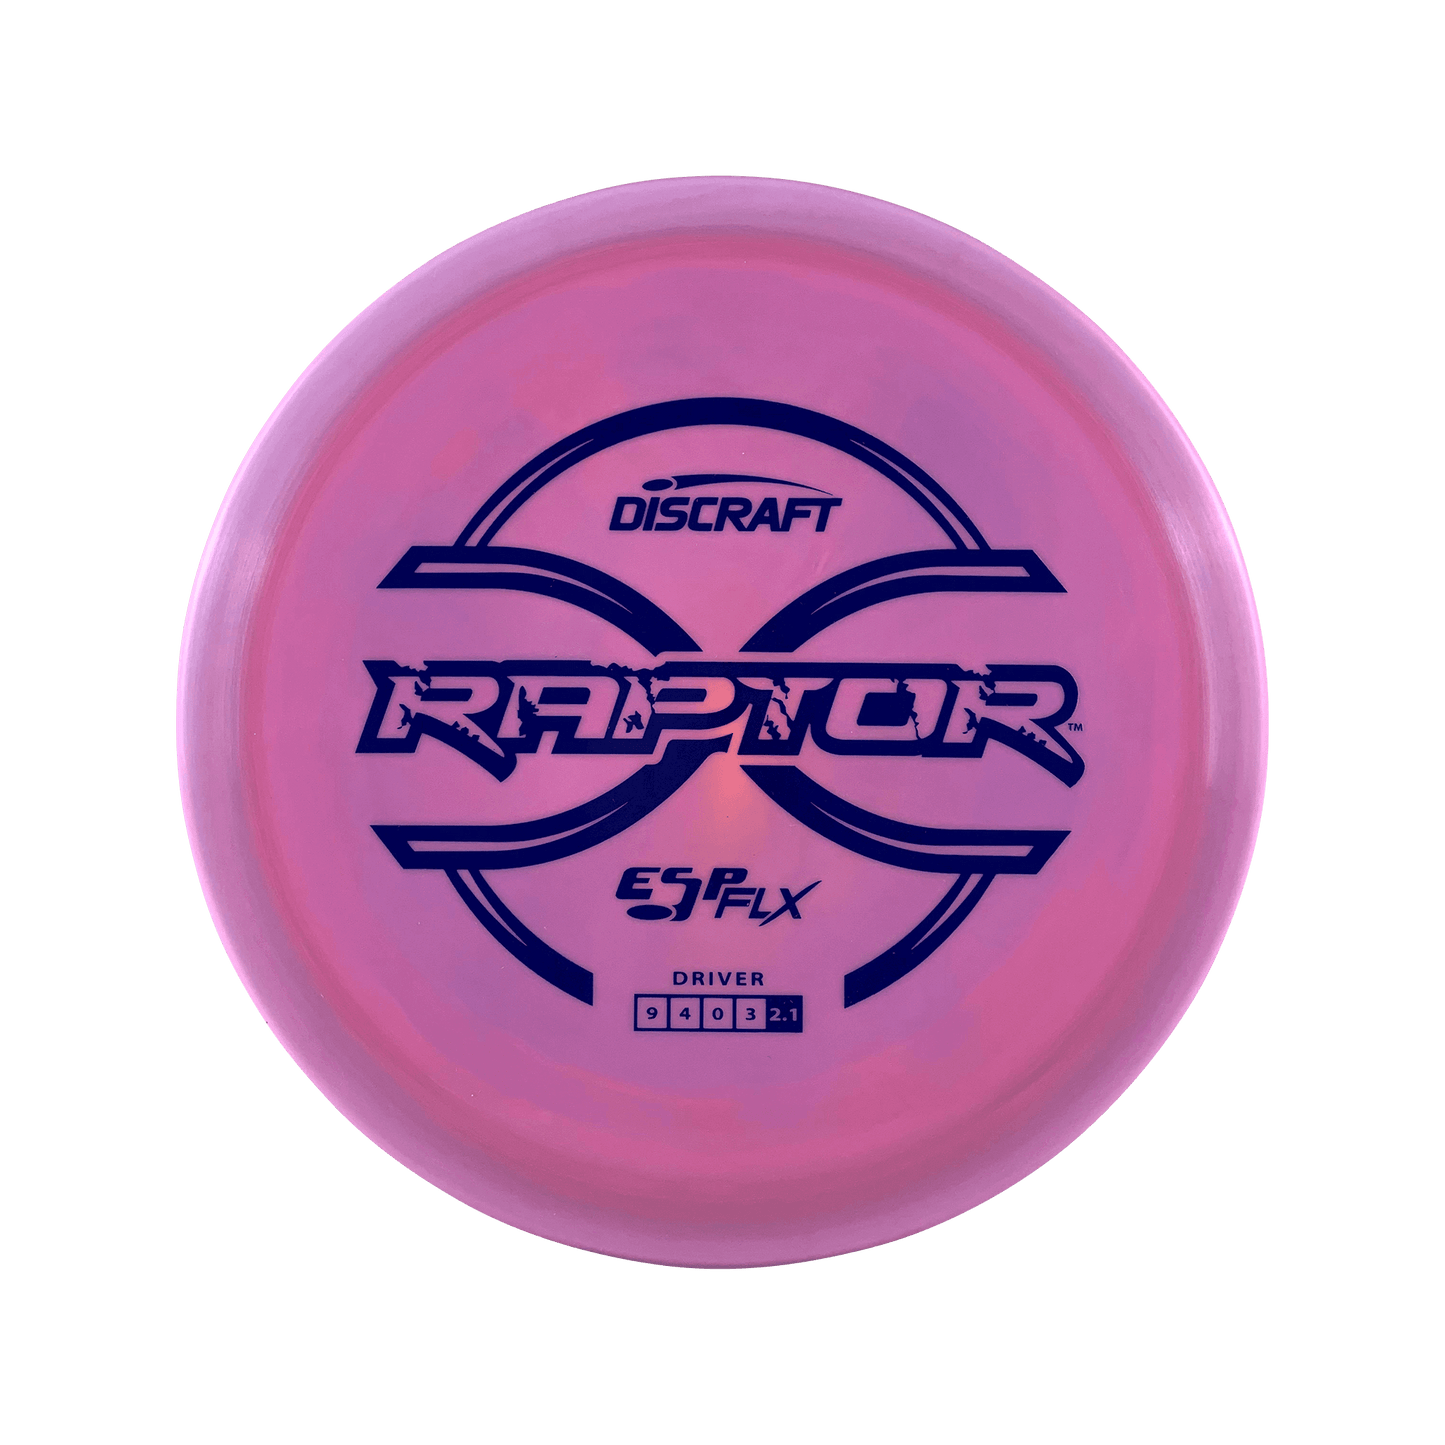 ESP FLX Raptor Disc Discraft multi / pink 170 